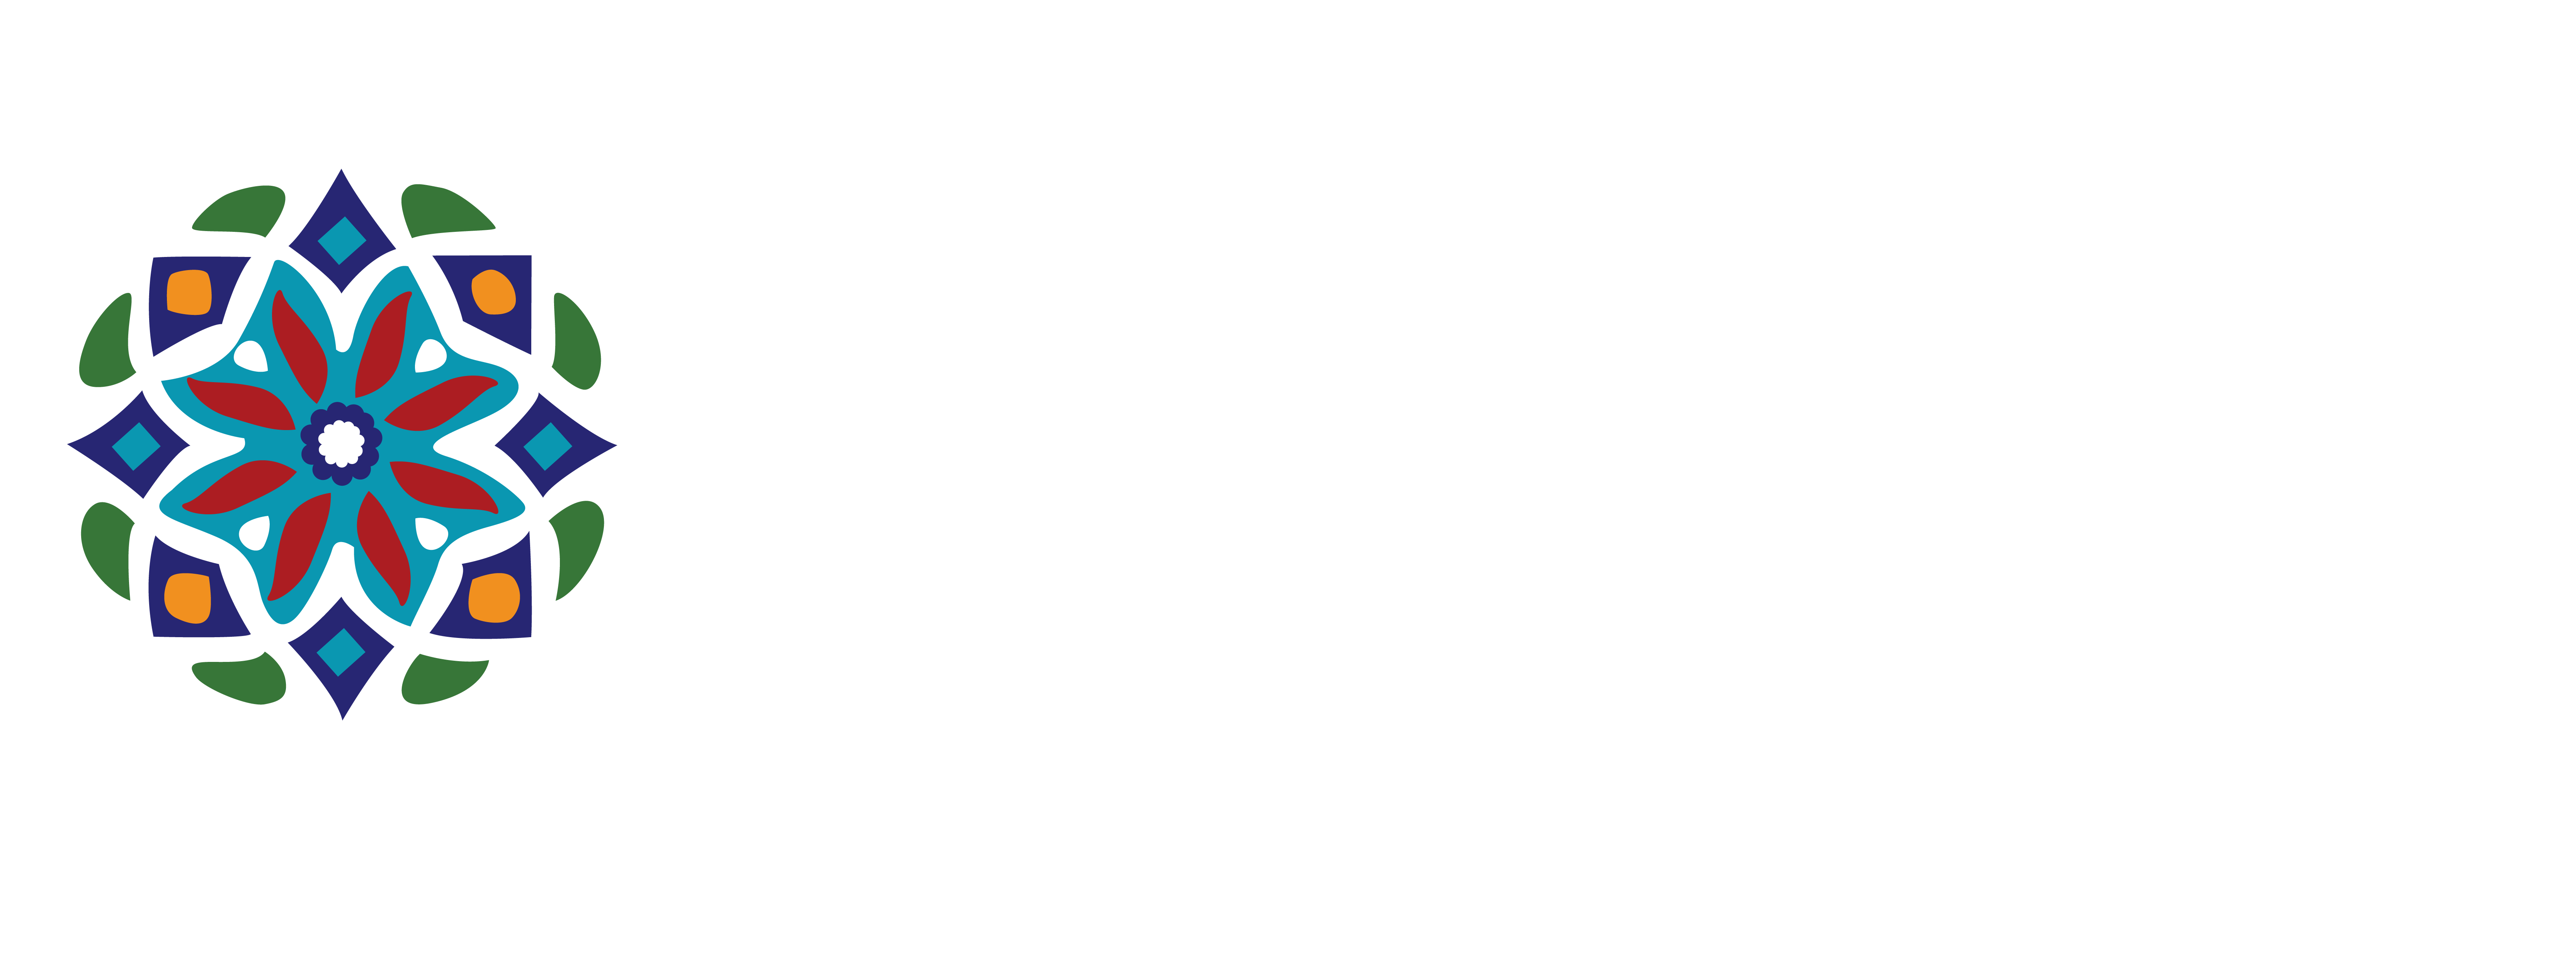 City of Boca Raton Florida Logo